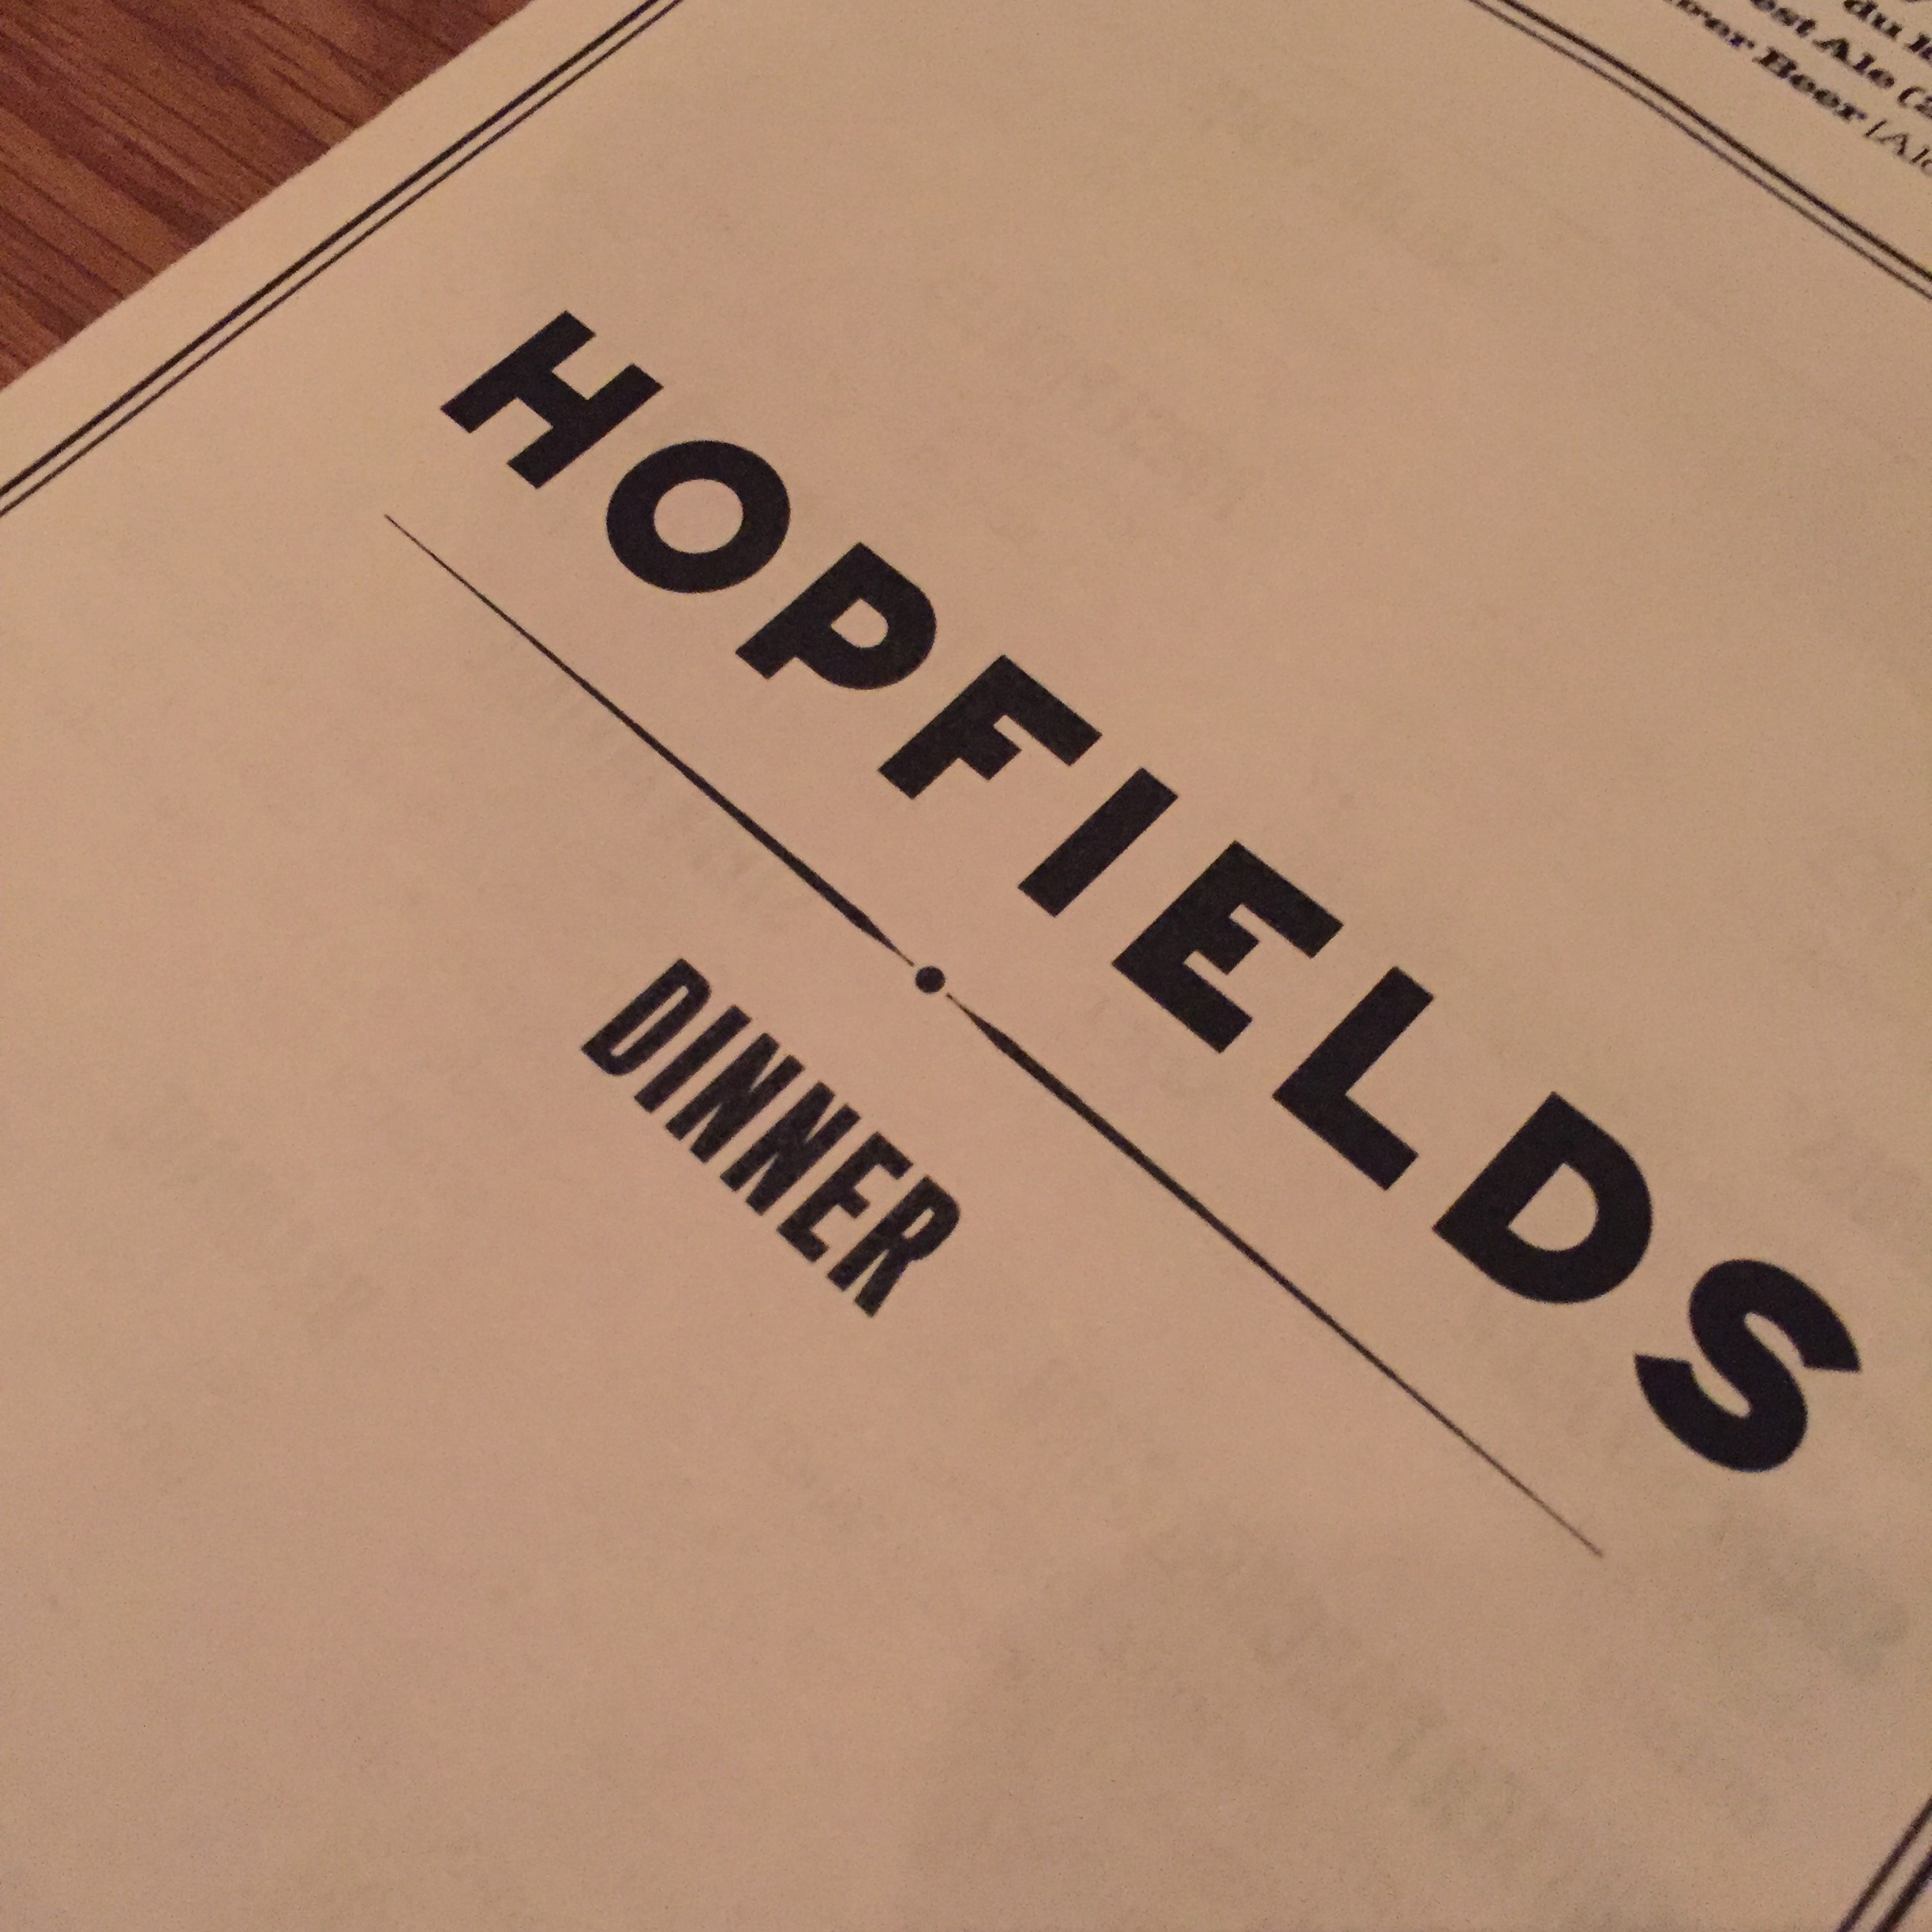 Hopfields Gastropub in Midtown.